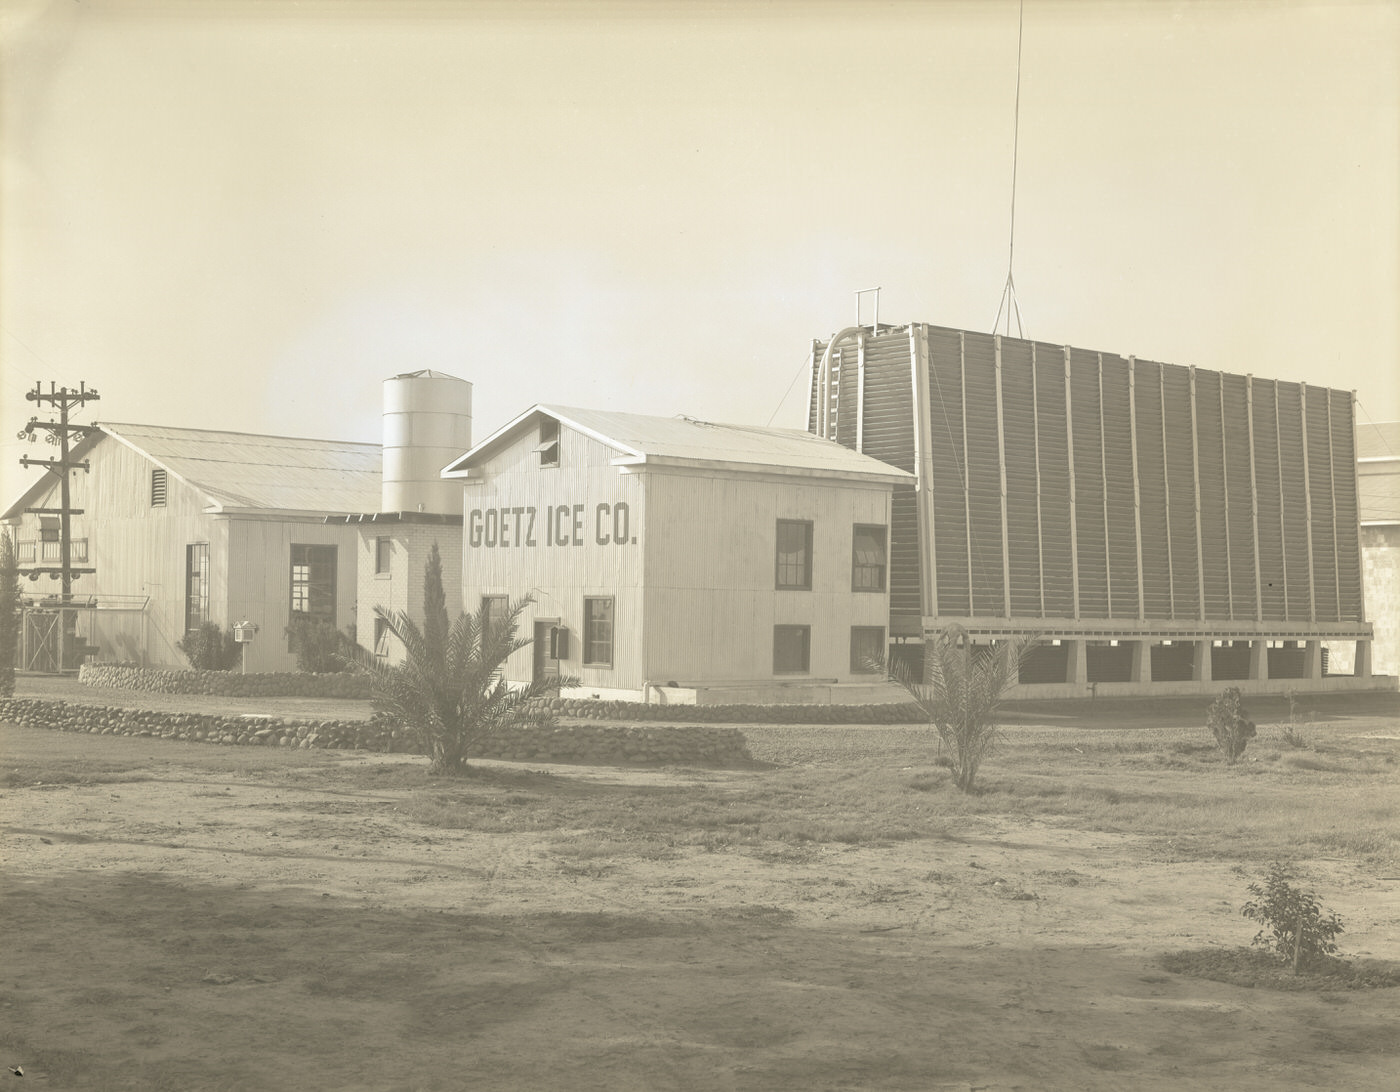 Goetz Ice Co. Building Exterior, 1930s